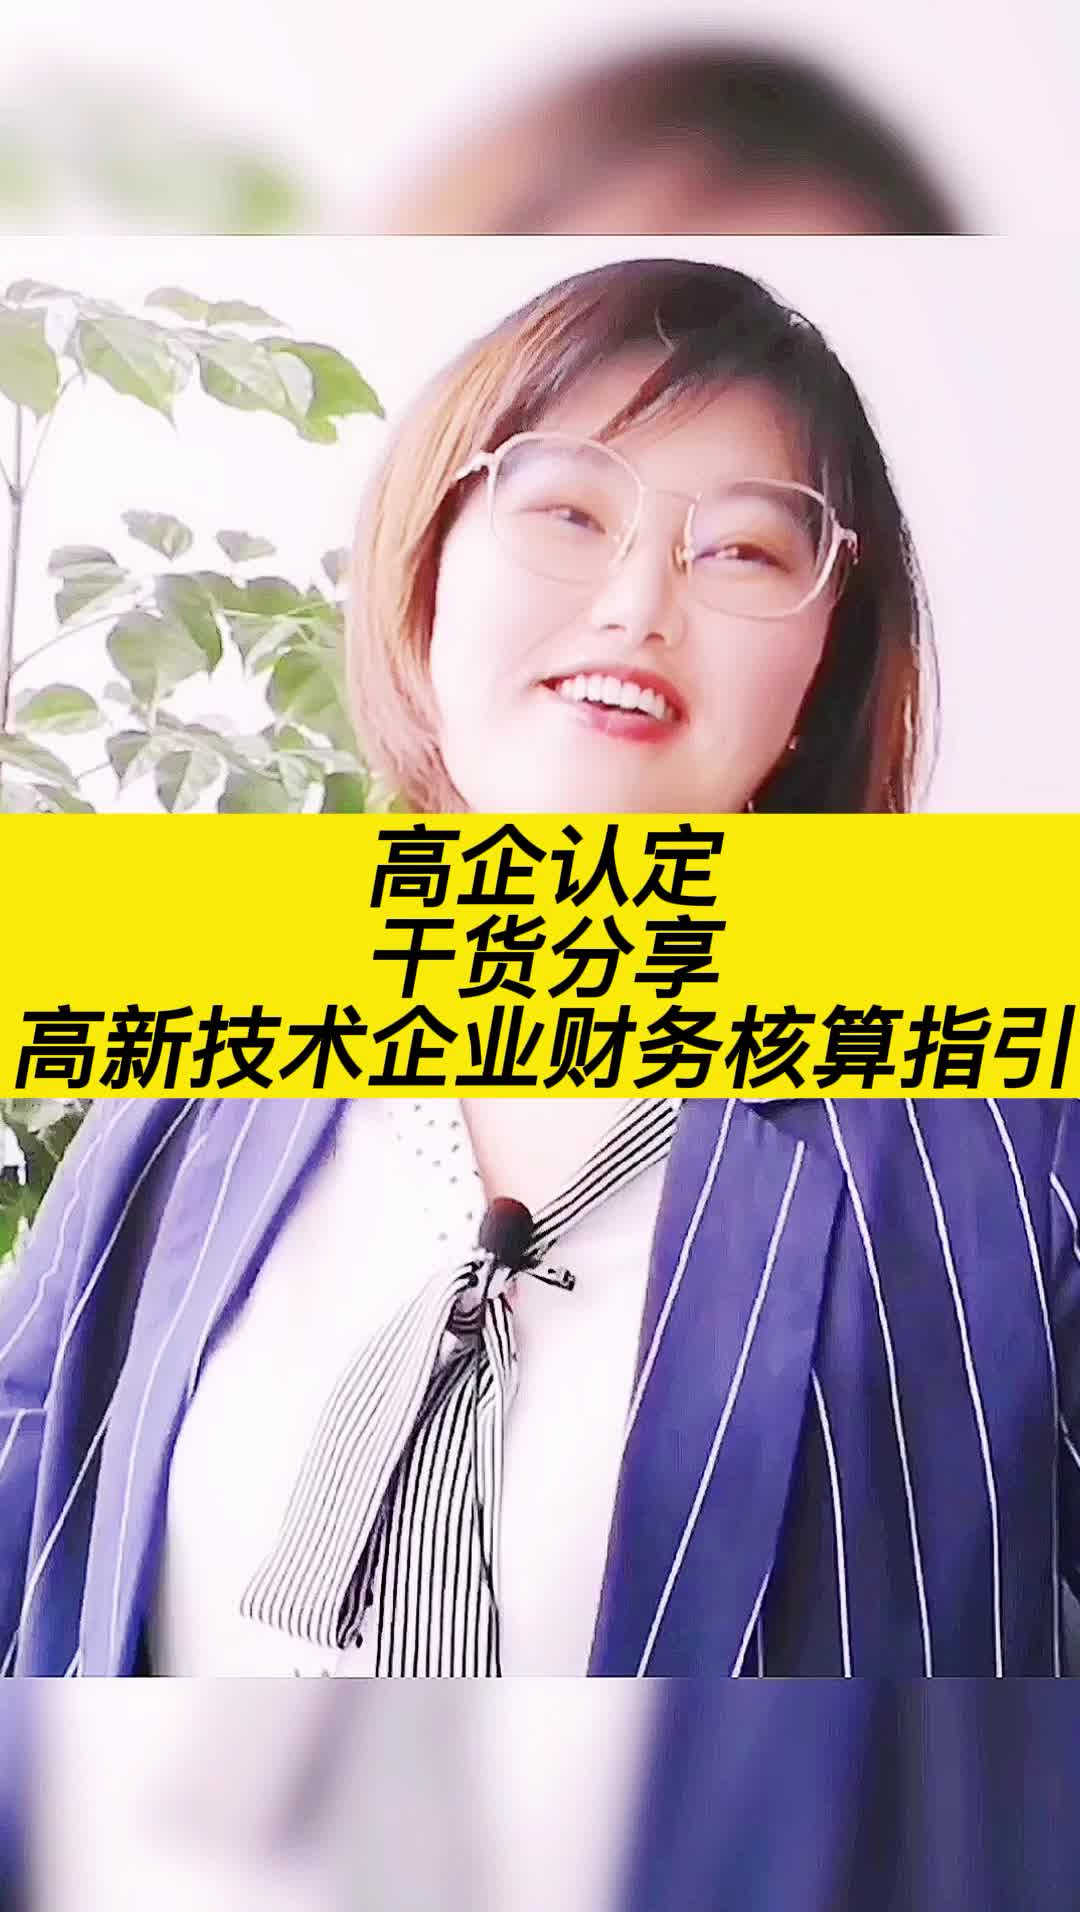 公司简介 | 深圳慧发网络科技有限公司